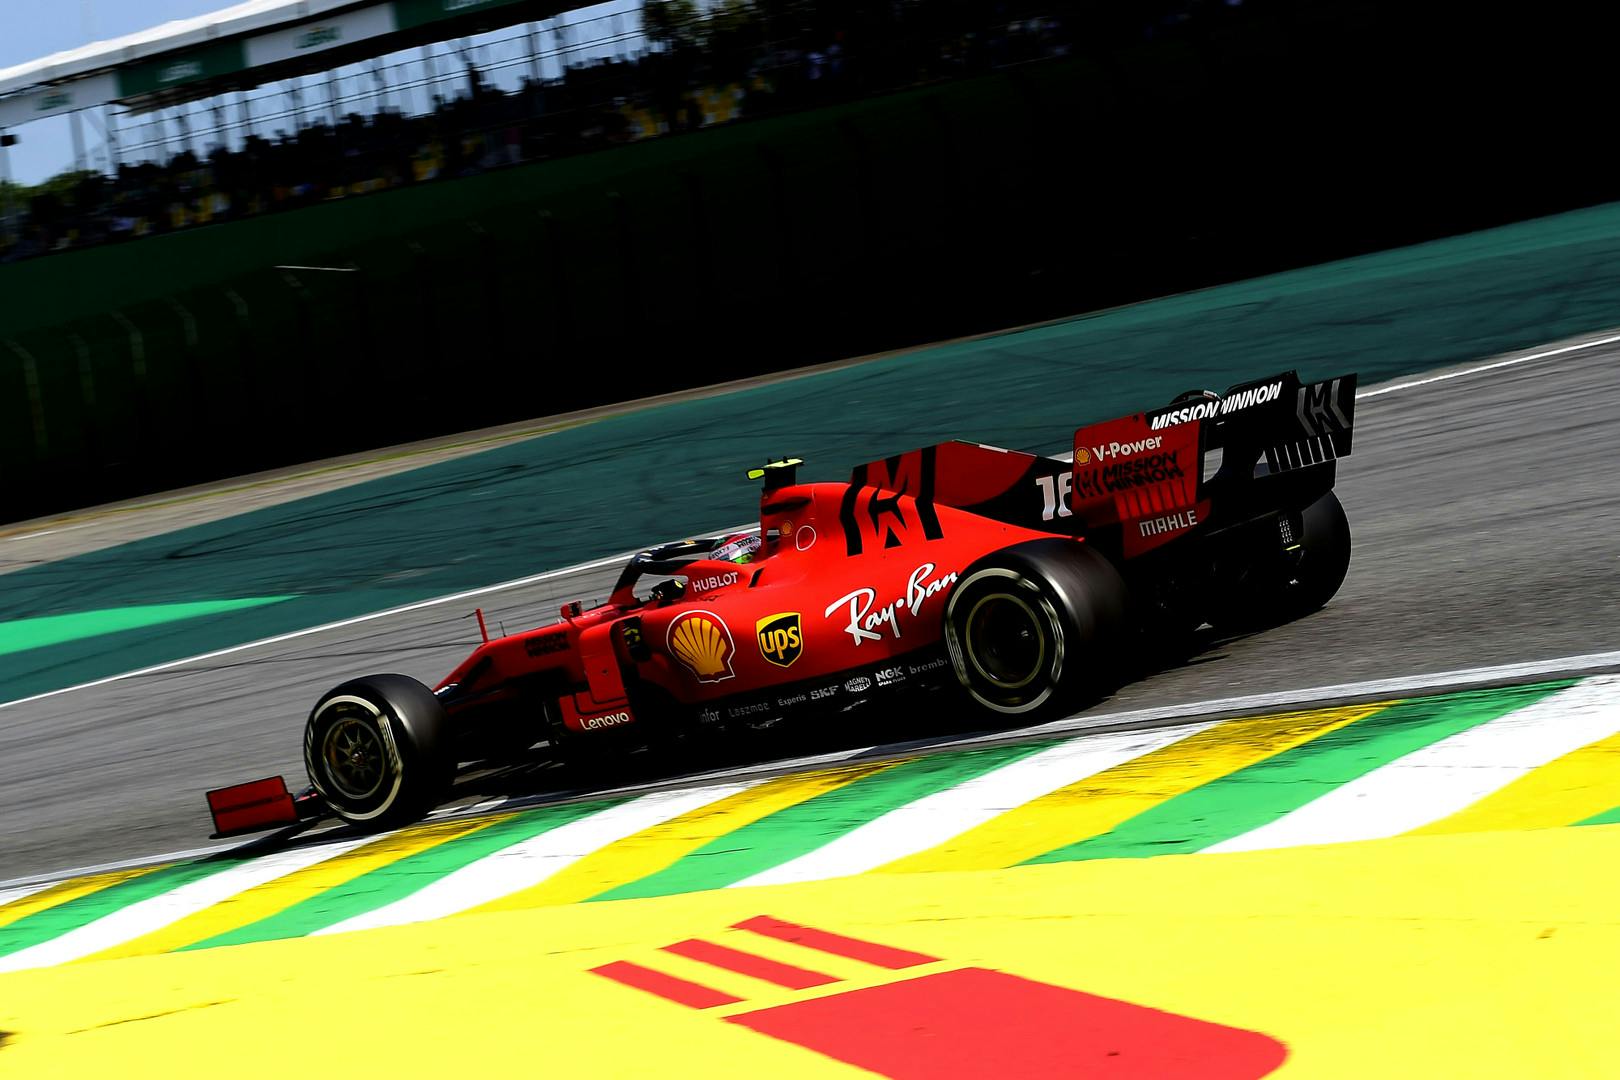 Salo wycofał się z komentarzy na temat ugody Ferrari i FIA